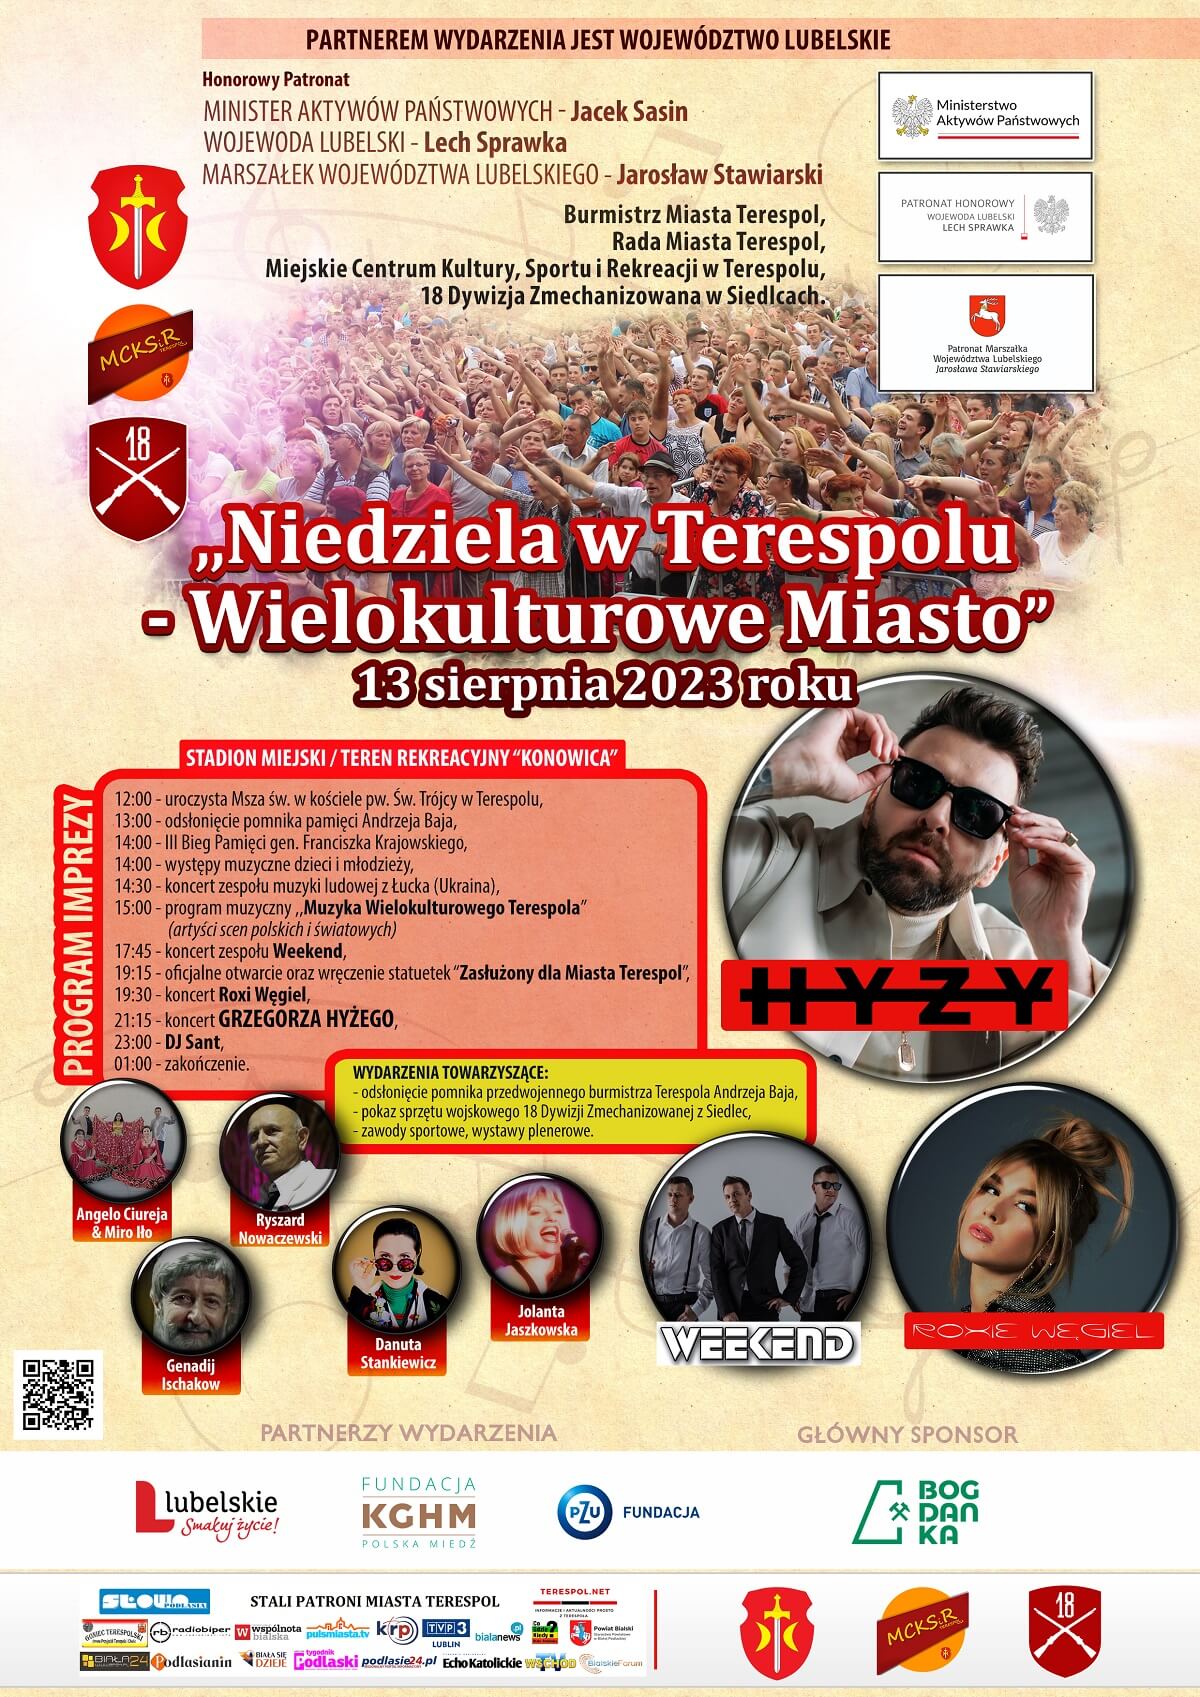 Niedziela w Terespolu 2023 - plakat, program wydarzenia